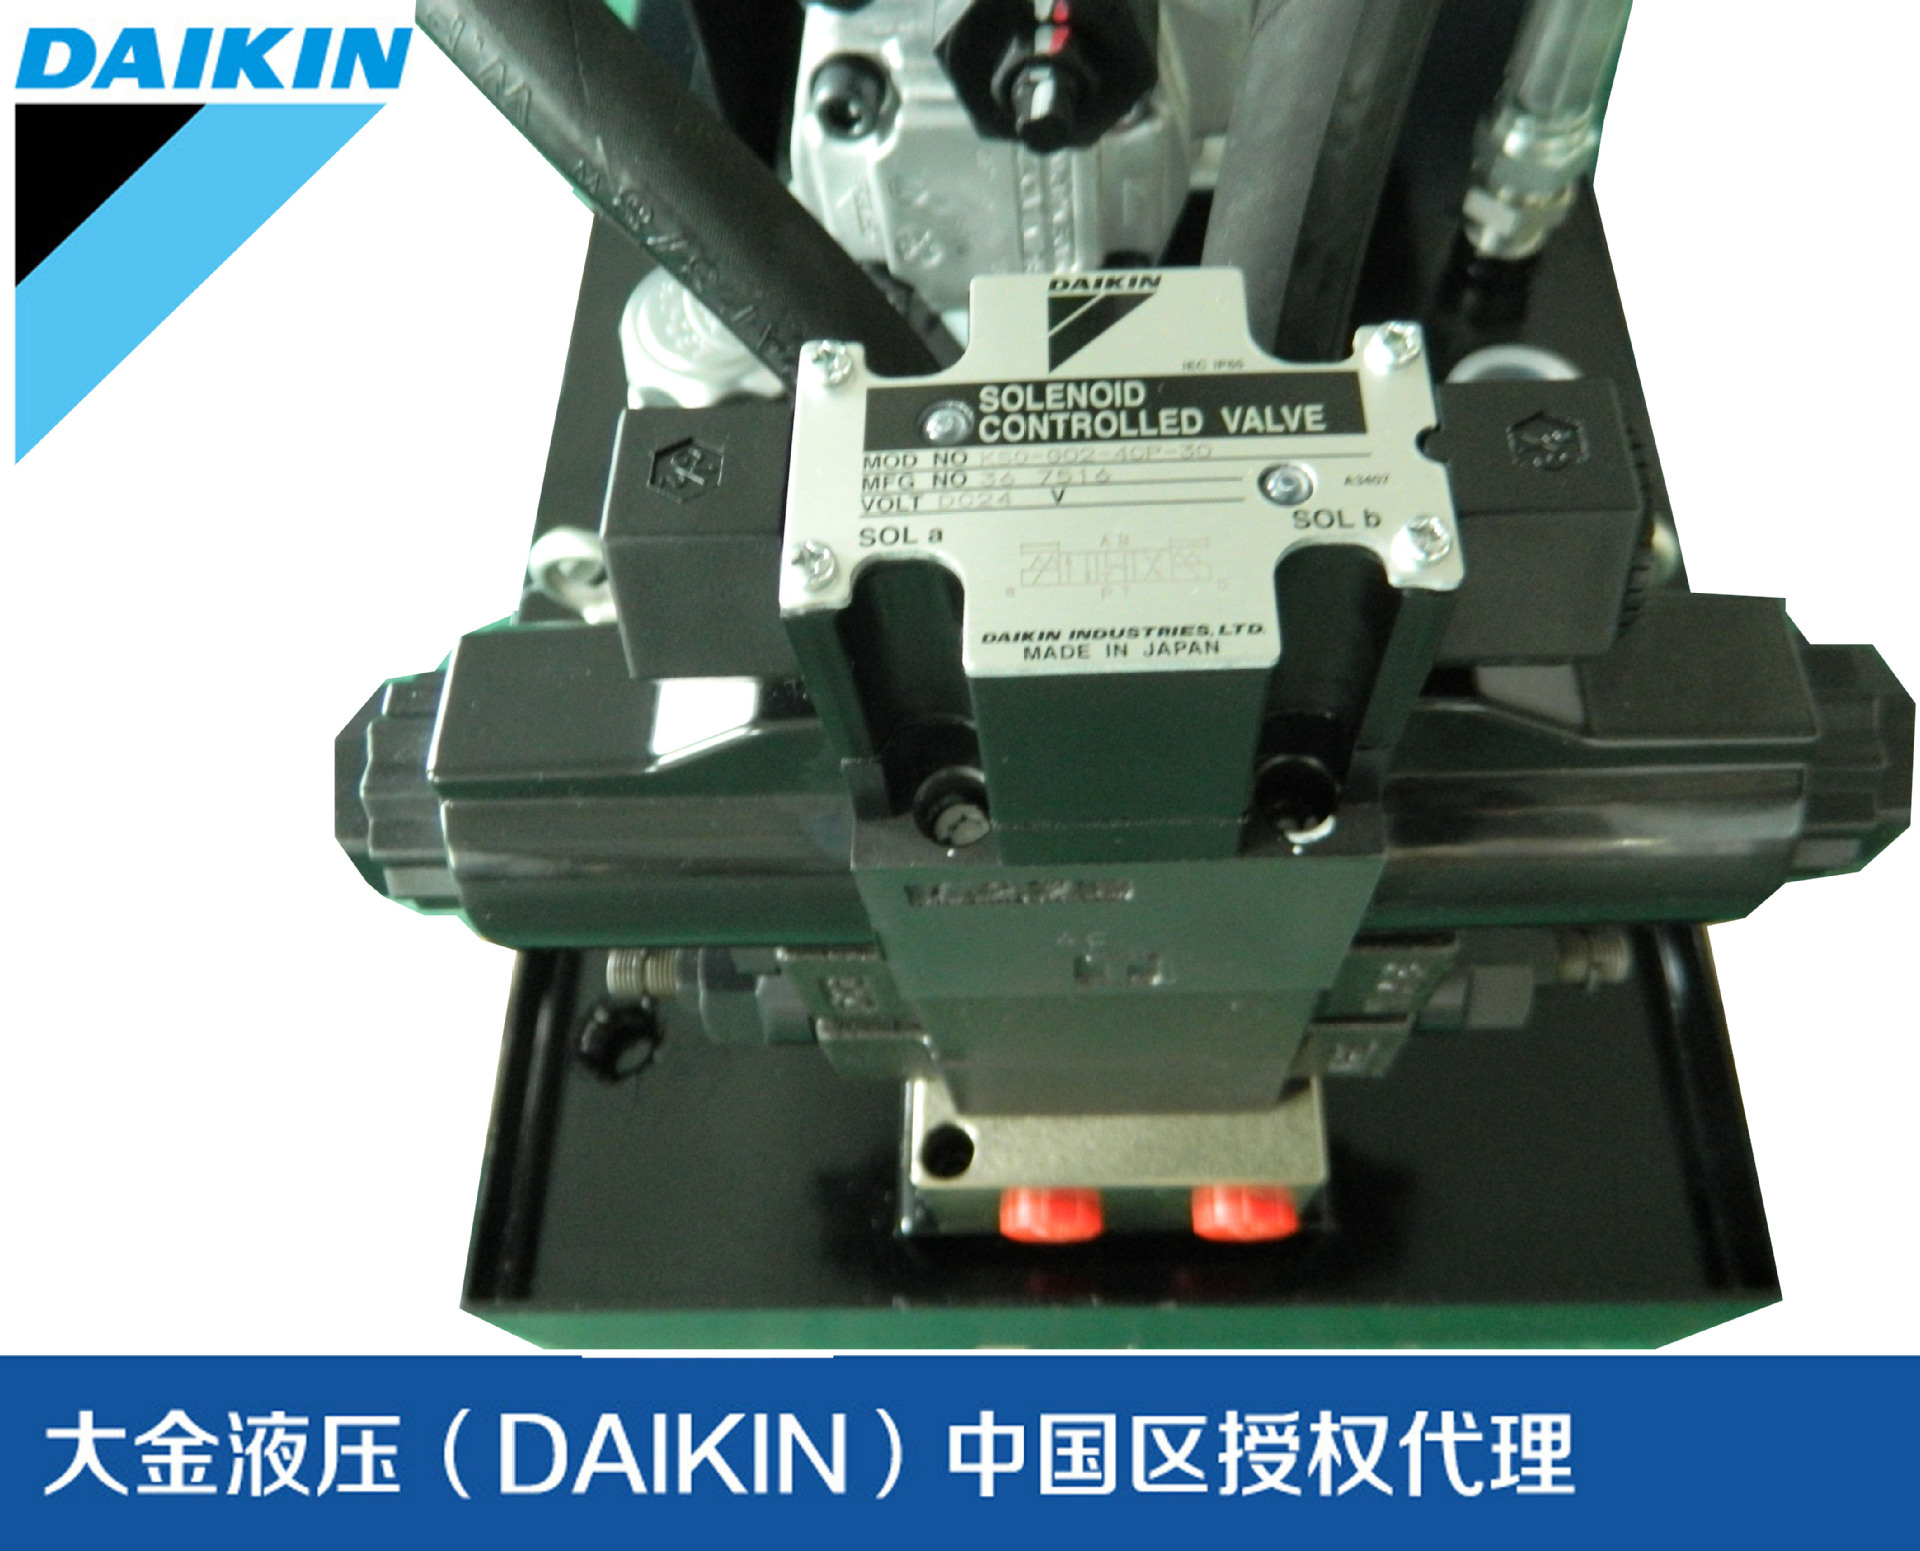 大金变频液压系统搭载阀组原装进口日本DAIKIN